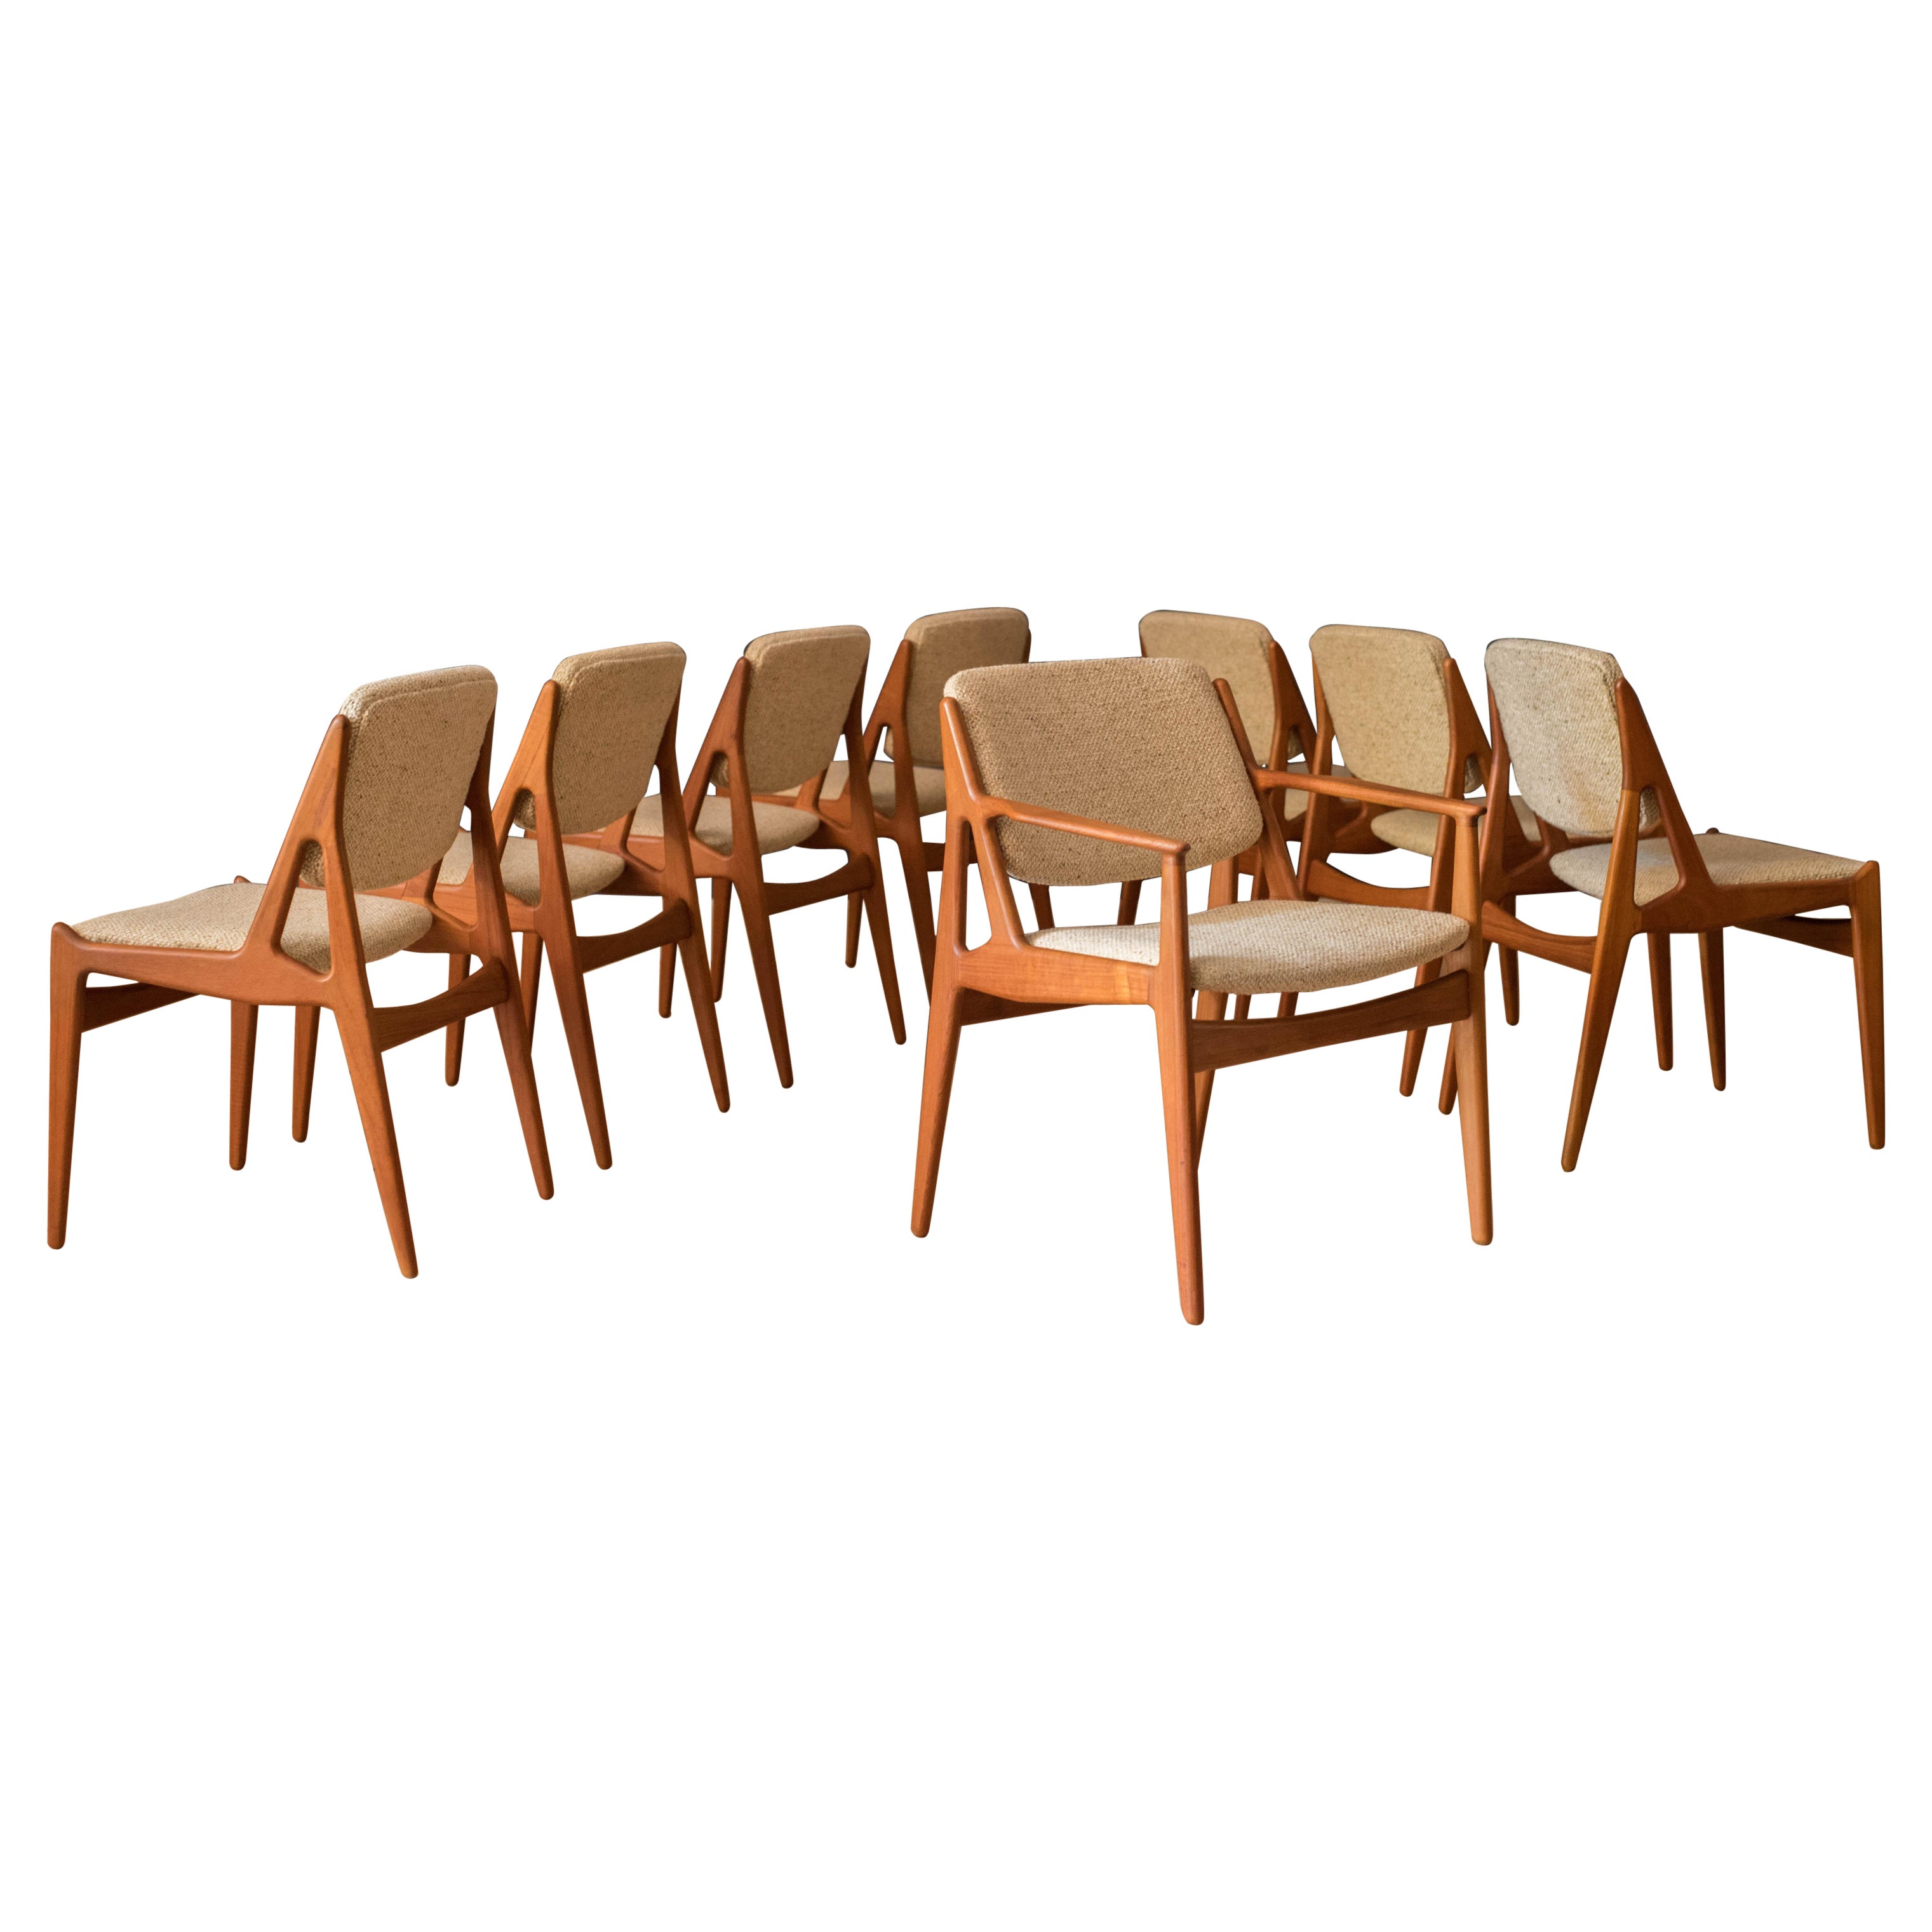 Ensemble vintage de huit chaises de salle à manger danoises Ella à dossier basculant en teck par Arne Vodder